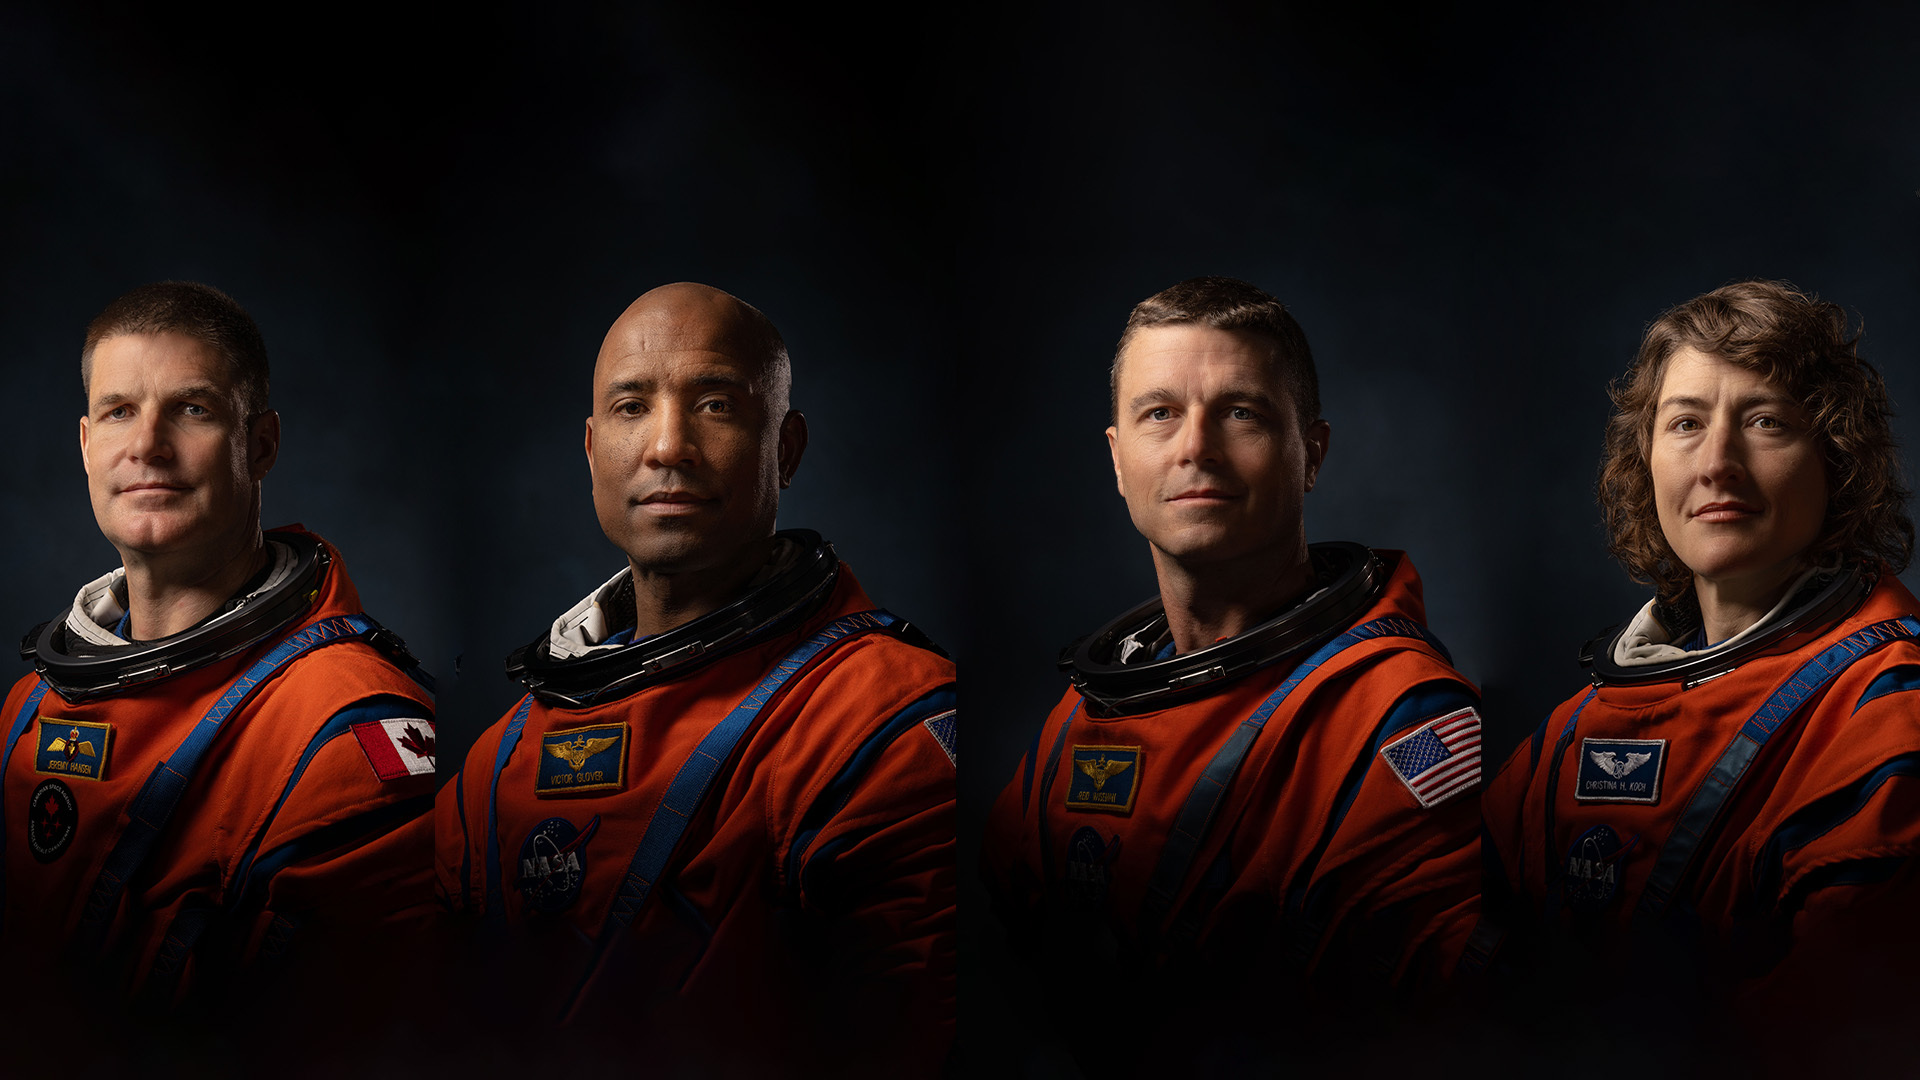 Société - Mission Artemis 2 : pourquoi plus aucun astronaute n'a